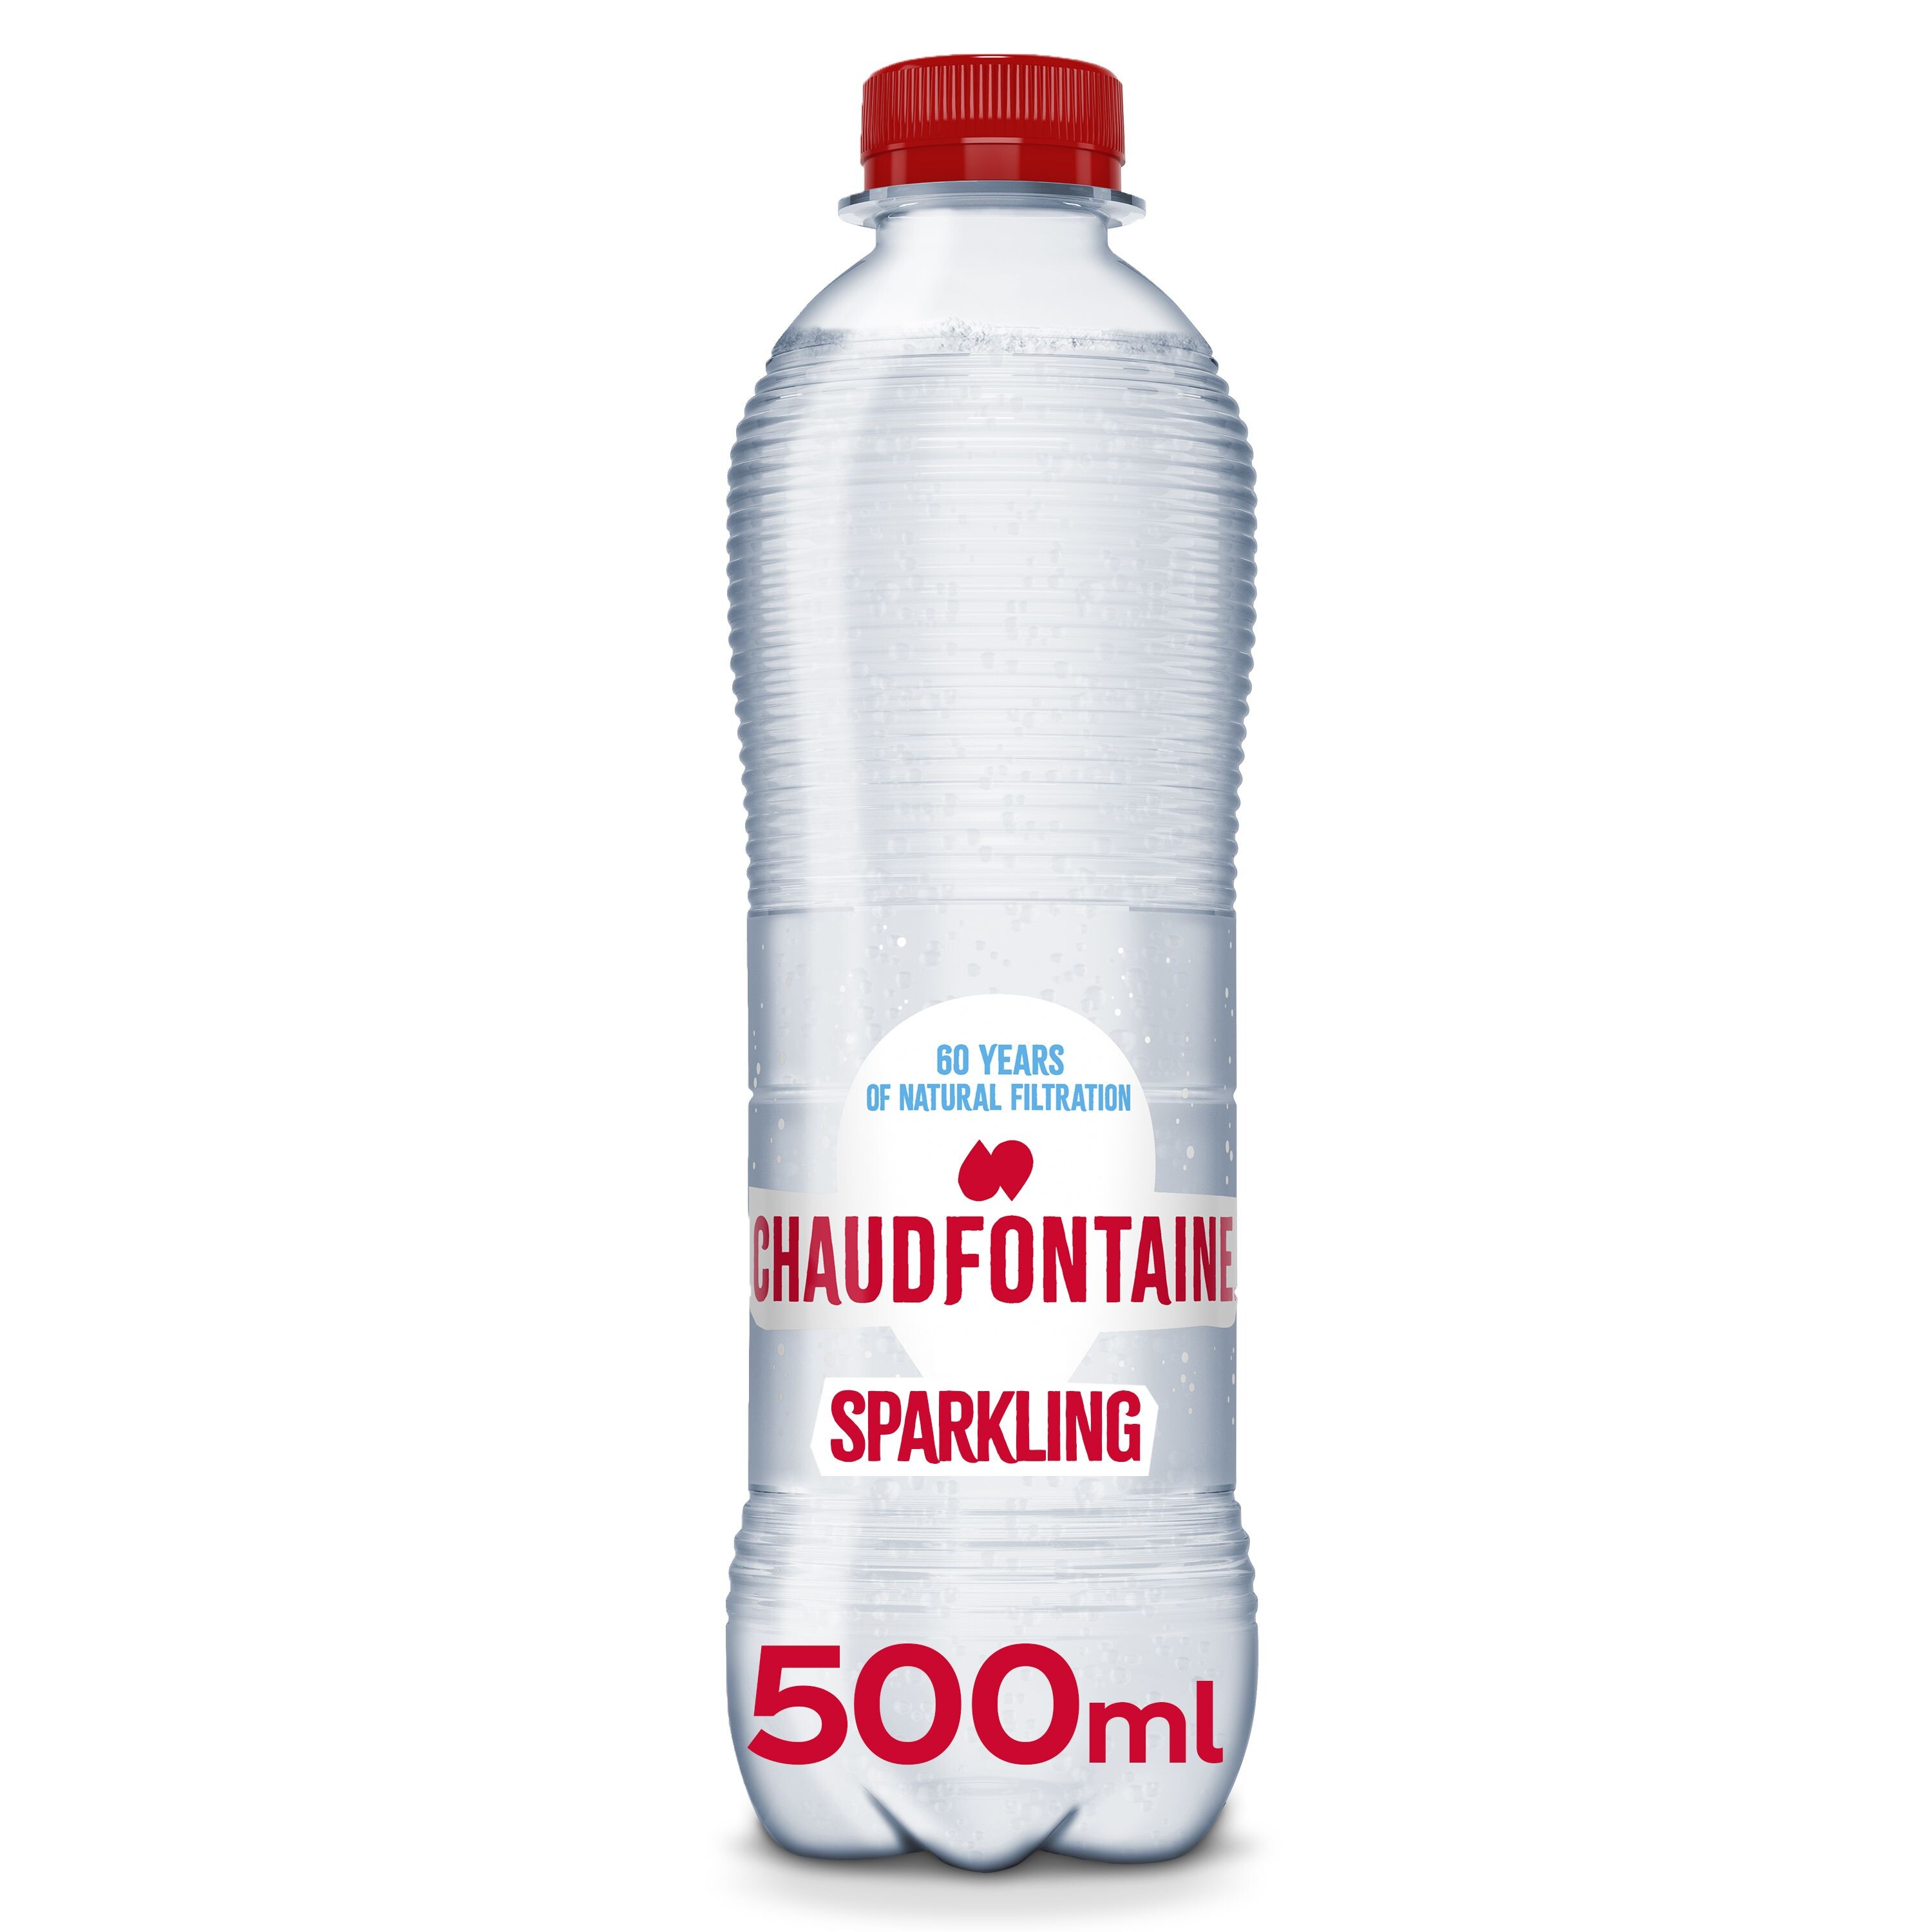 Chaudfontaine Sparkling Water 50cl PET bottle